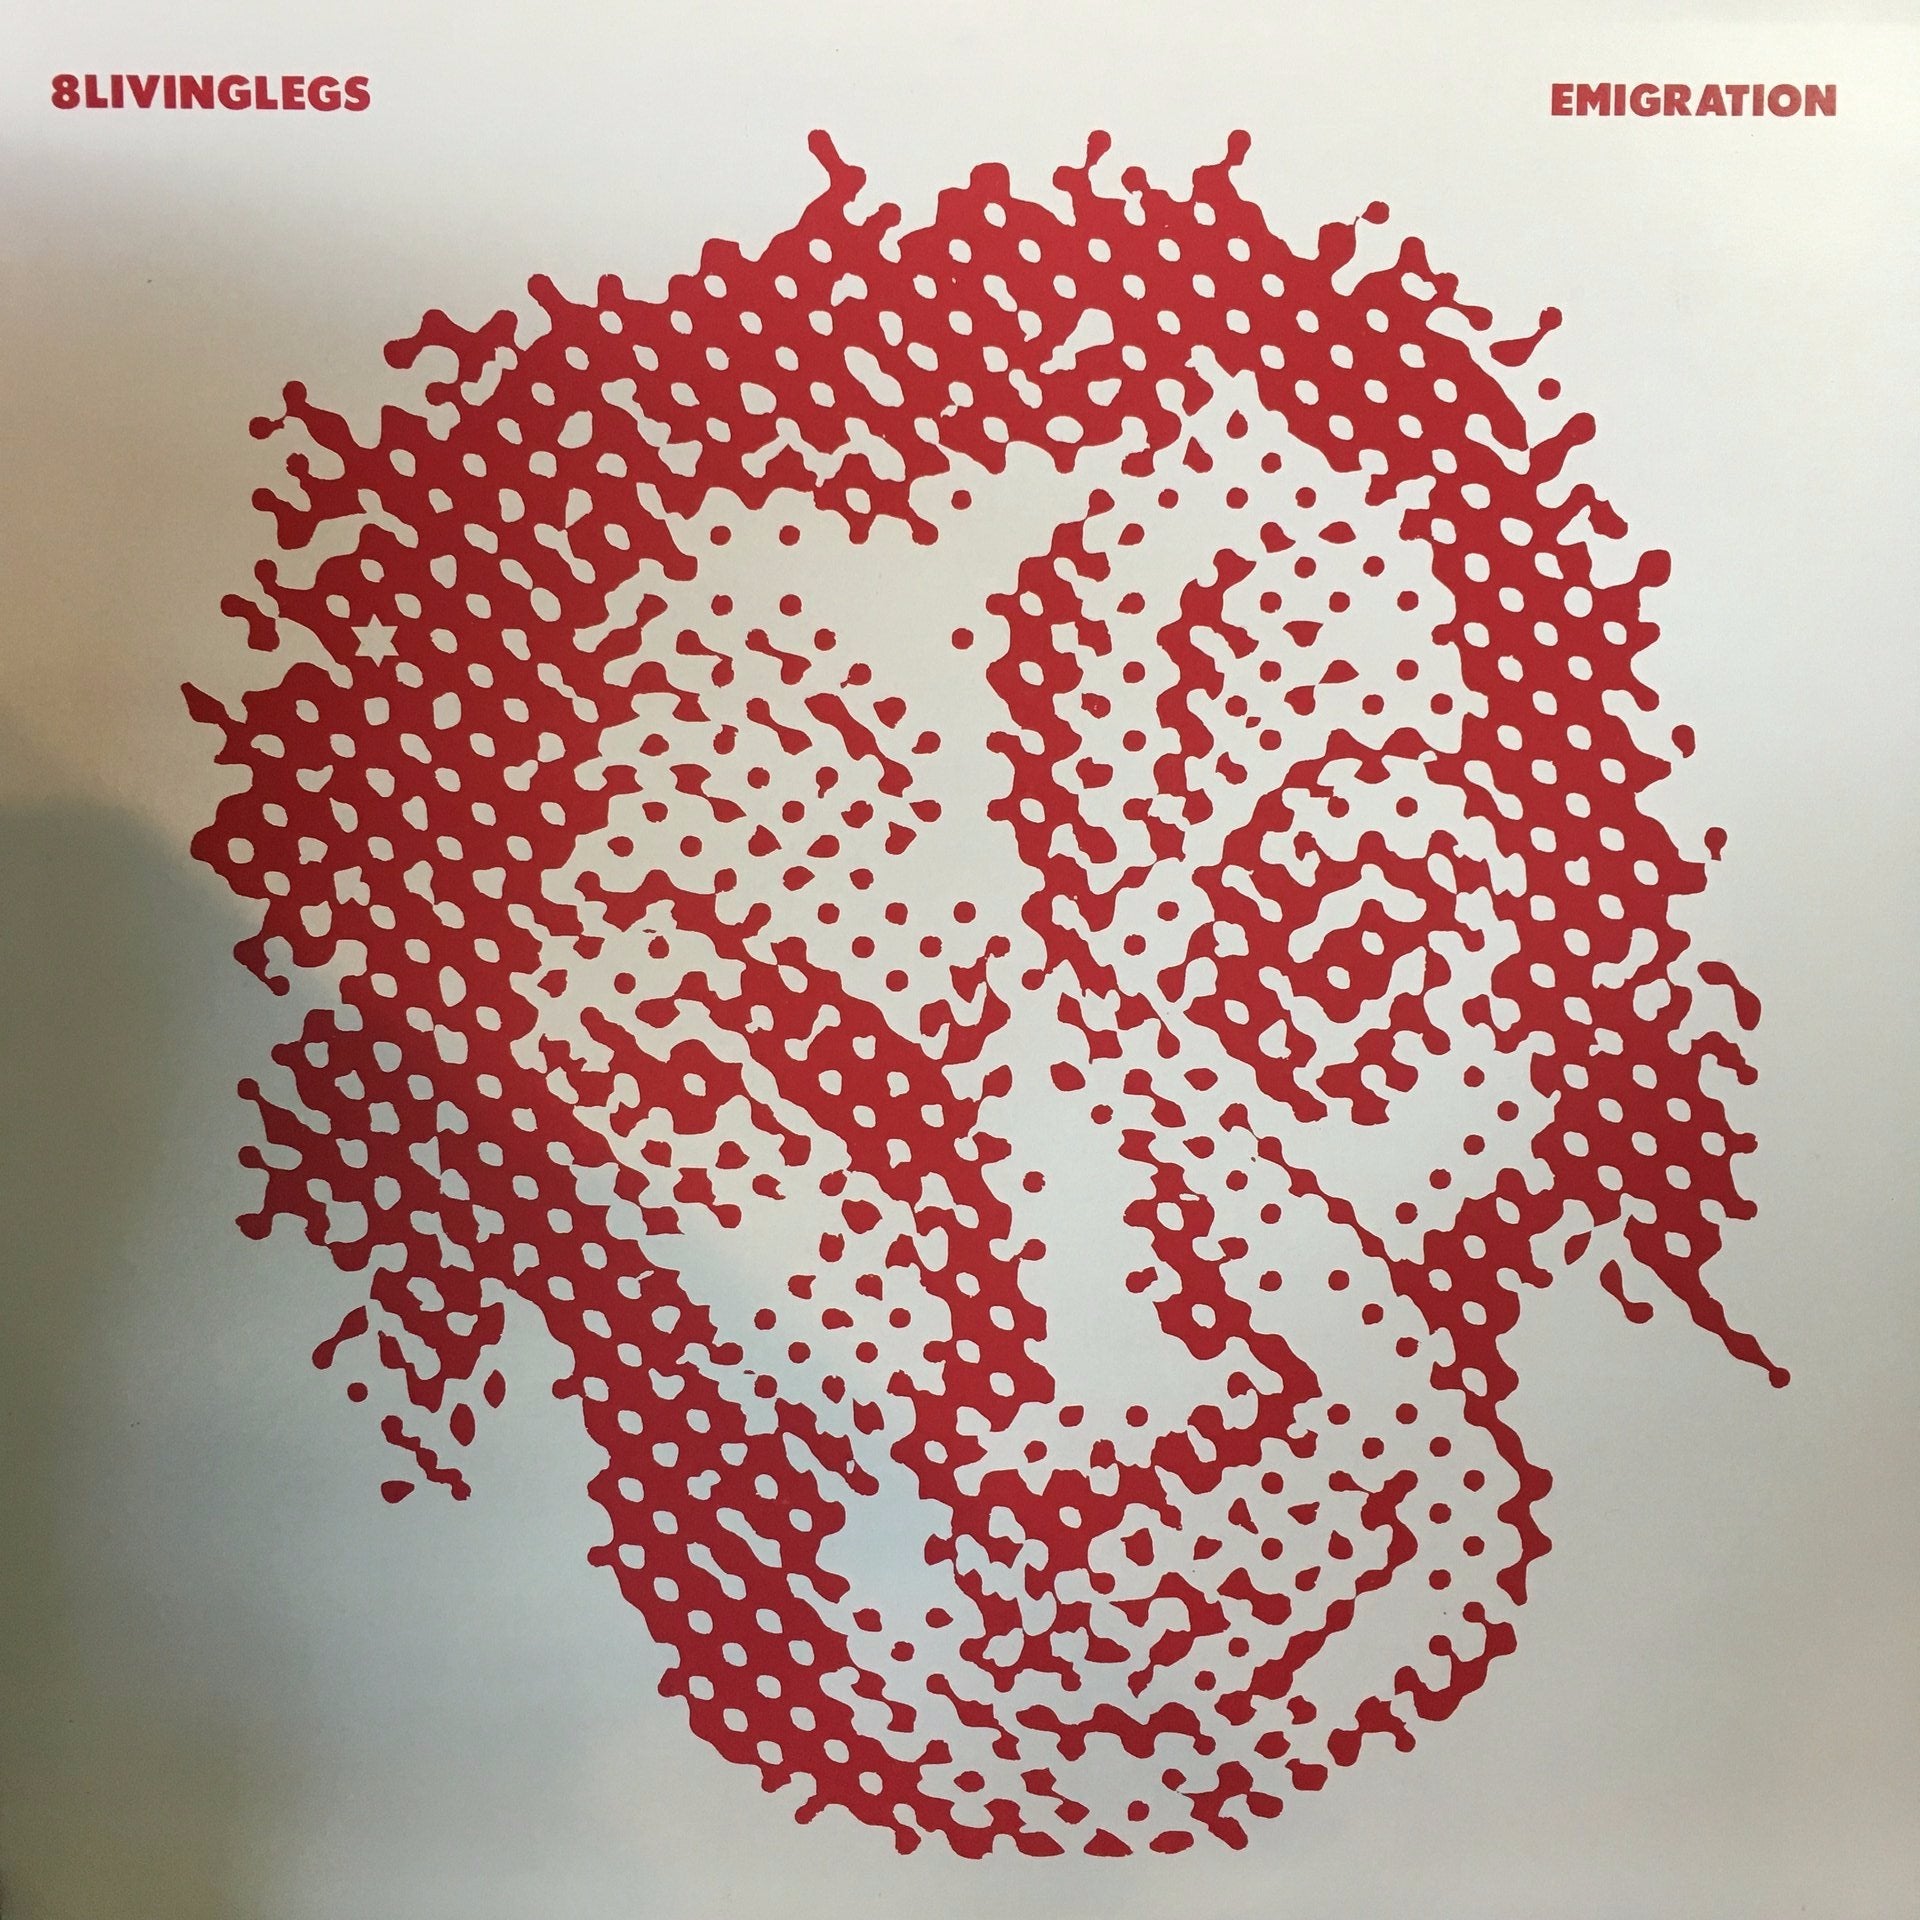 8LIVINGLEGS/ FLAK-EMIGRATION 12" EP EX COVER EX